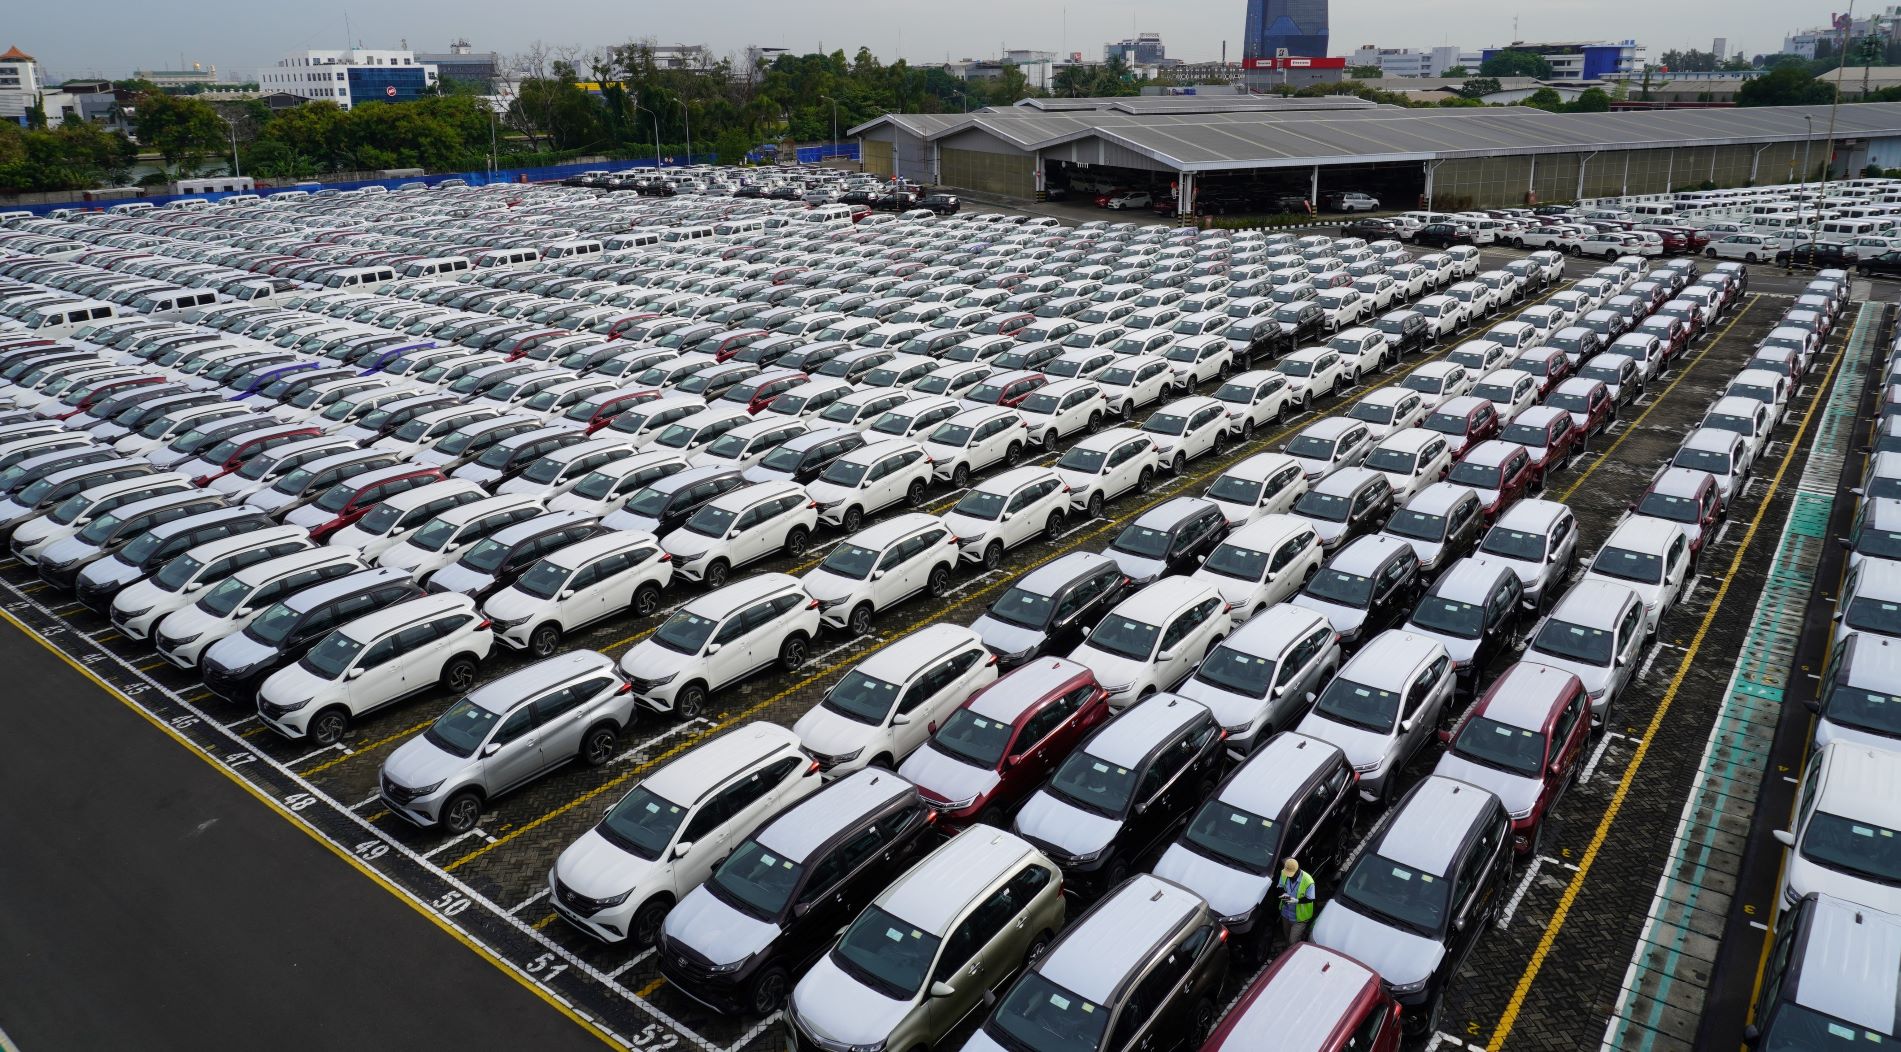 Market Share Daihatsu Hingga Kuartal I 2023 Naik Menjadi 21,2 Persen